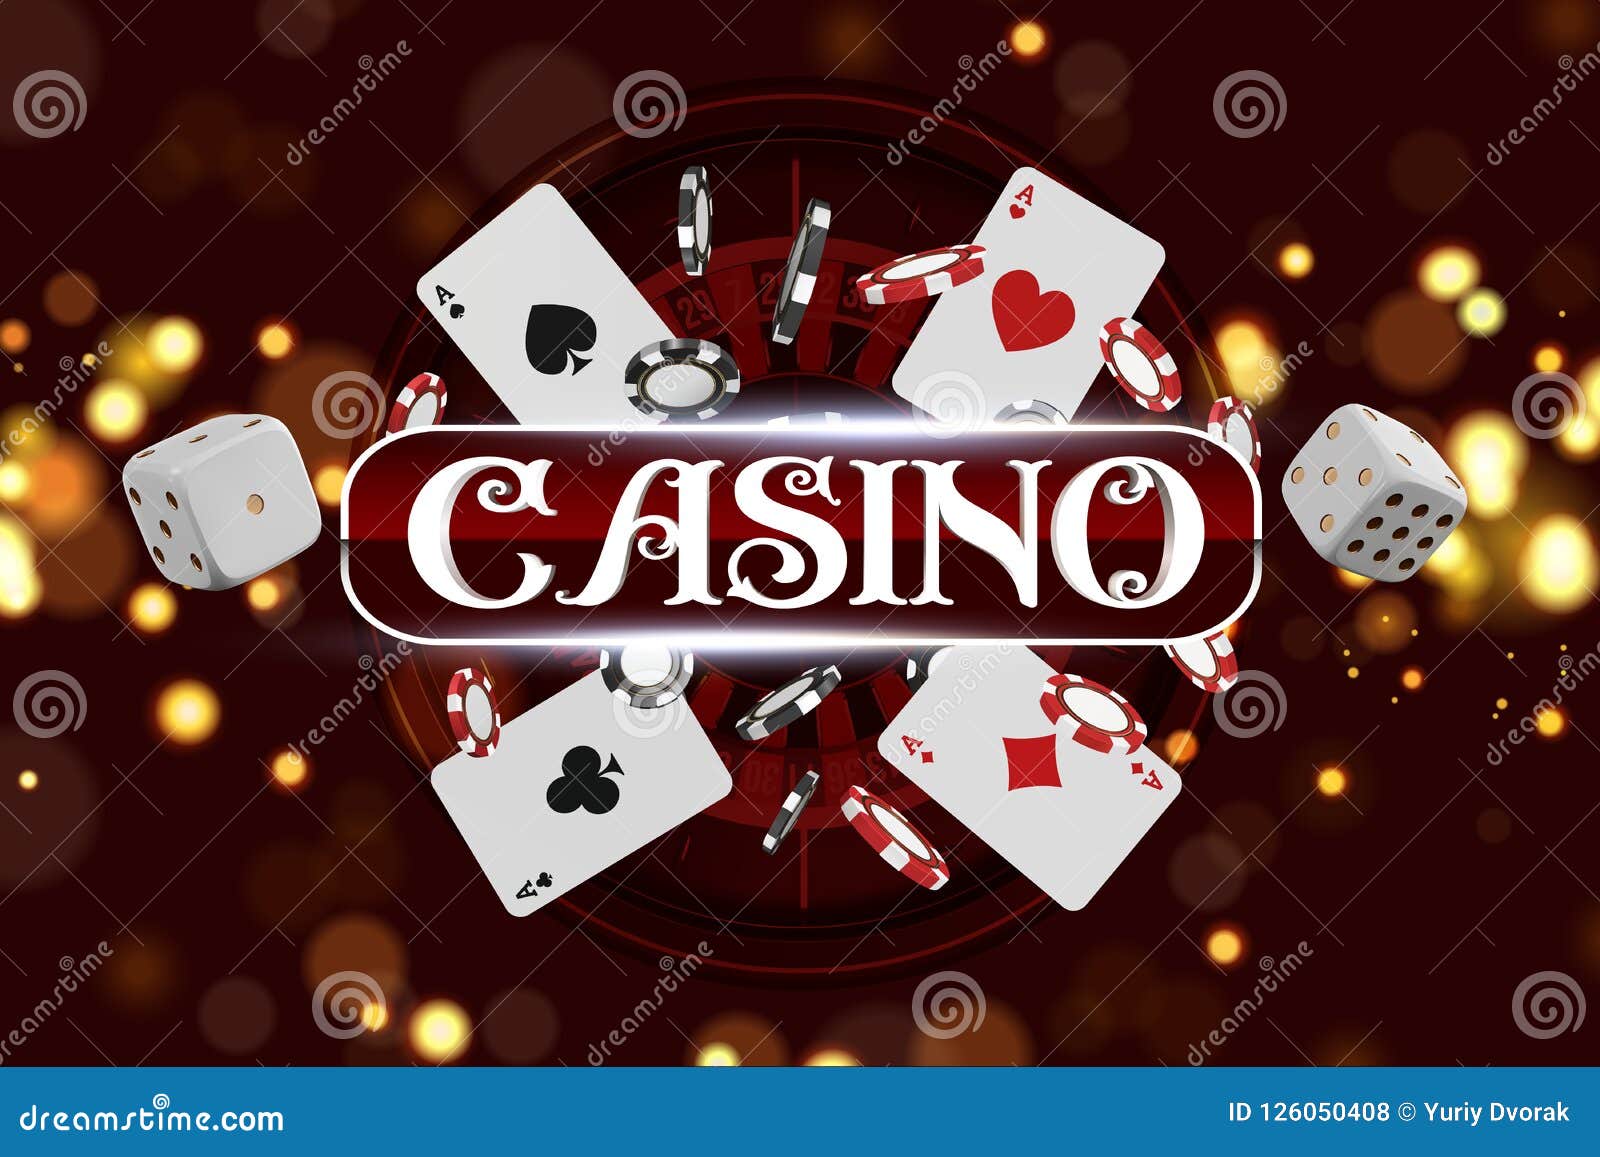 Random online casinos no deposit Tip